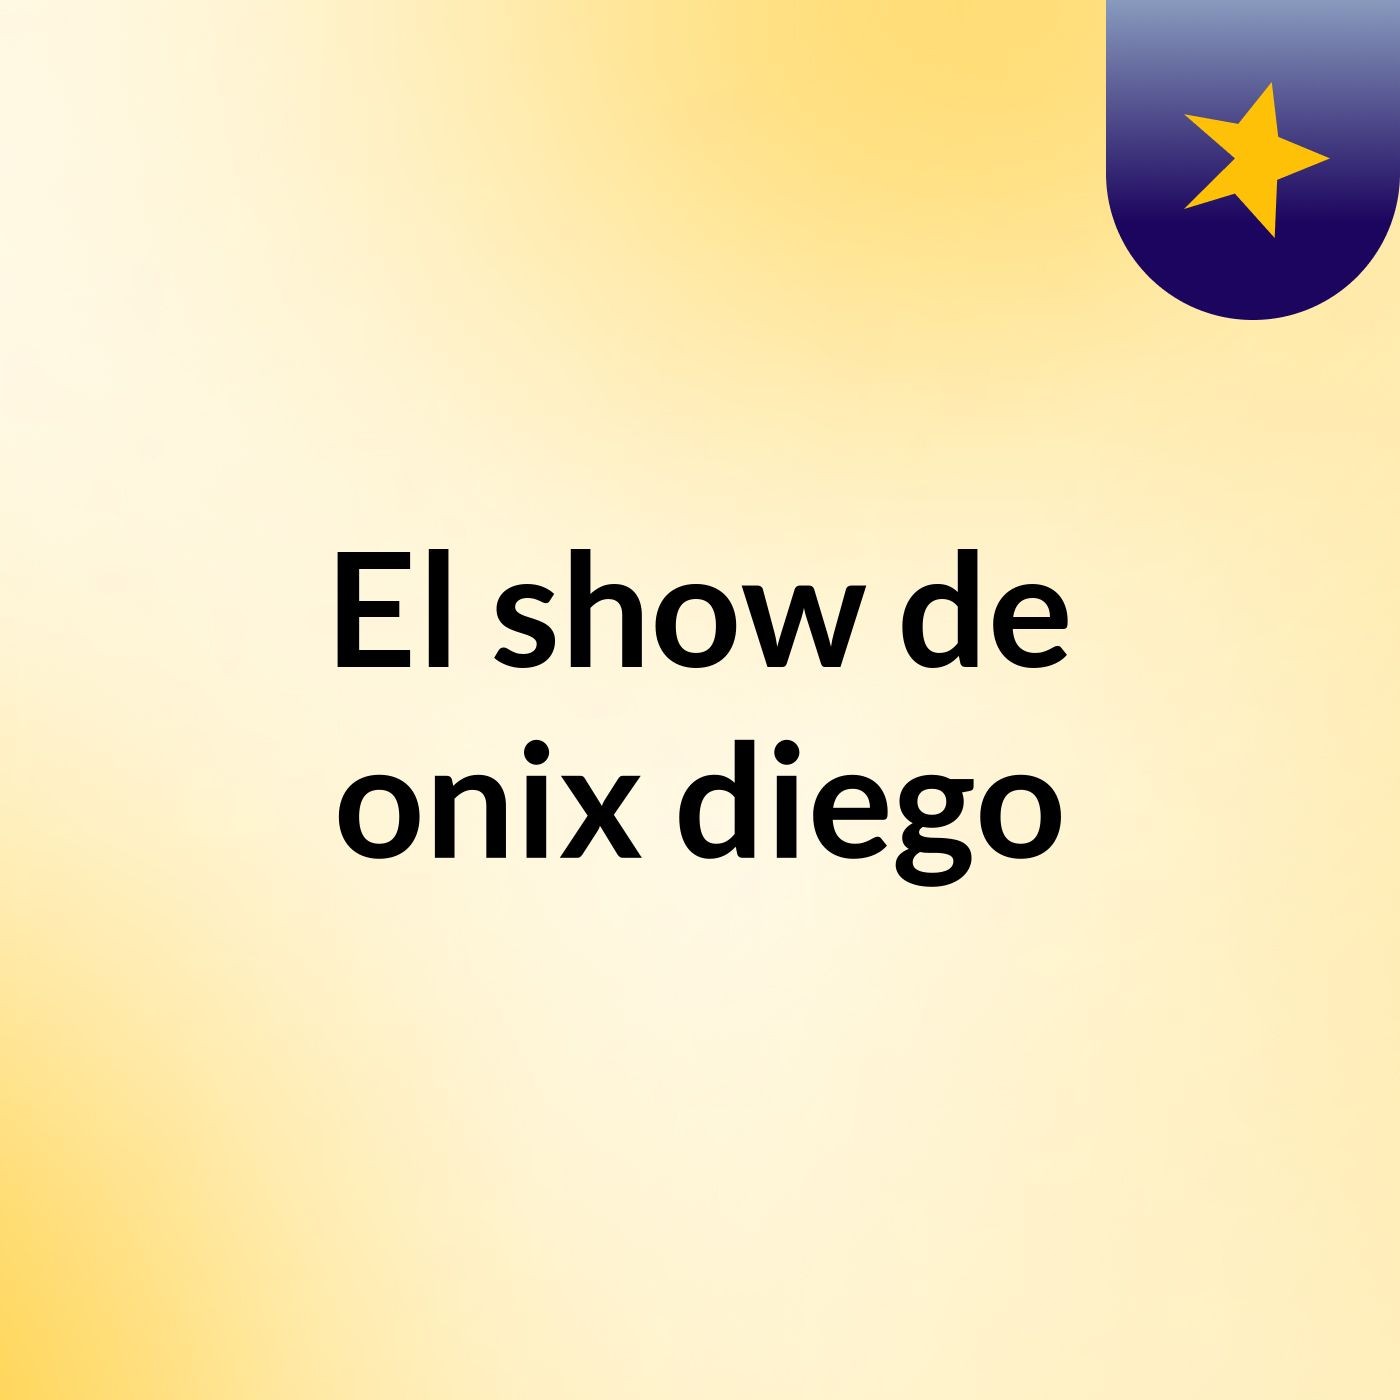 El show de onix diego